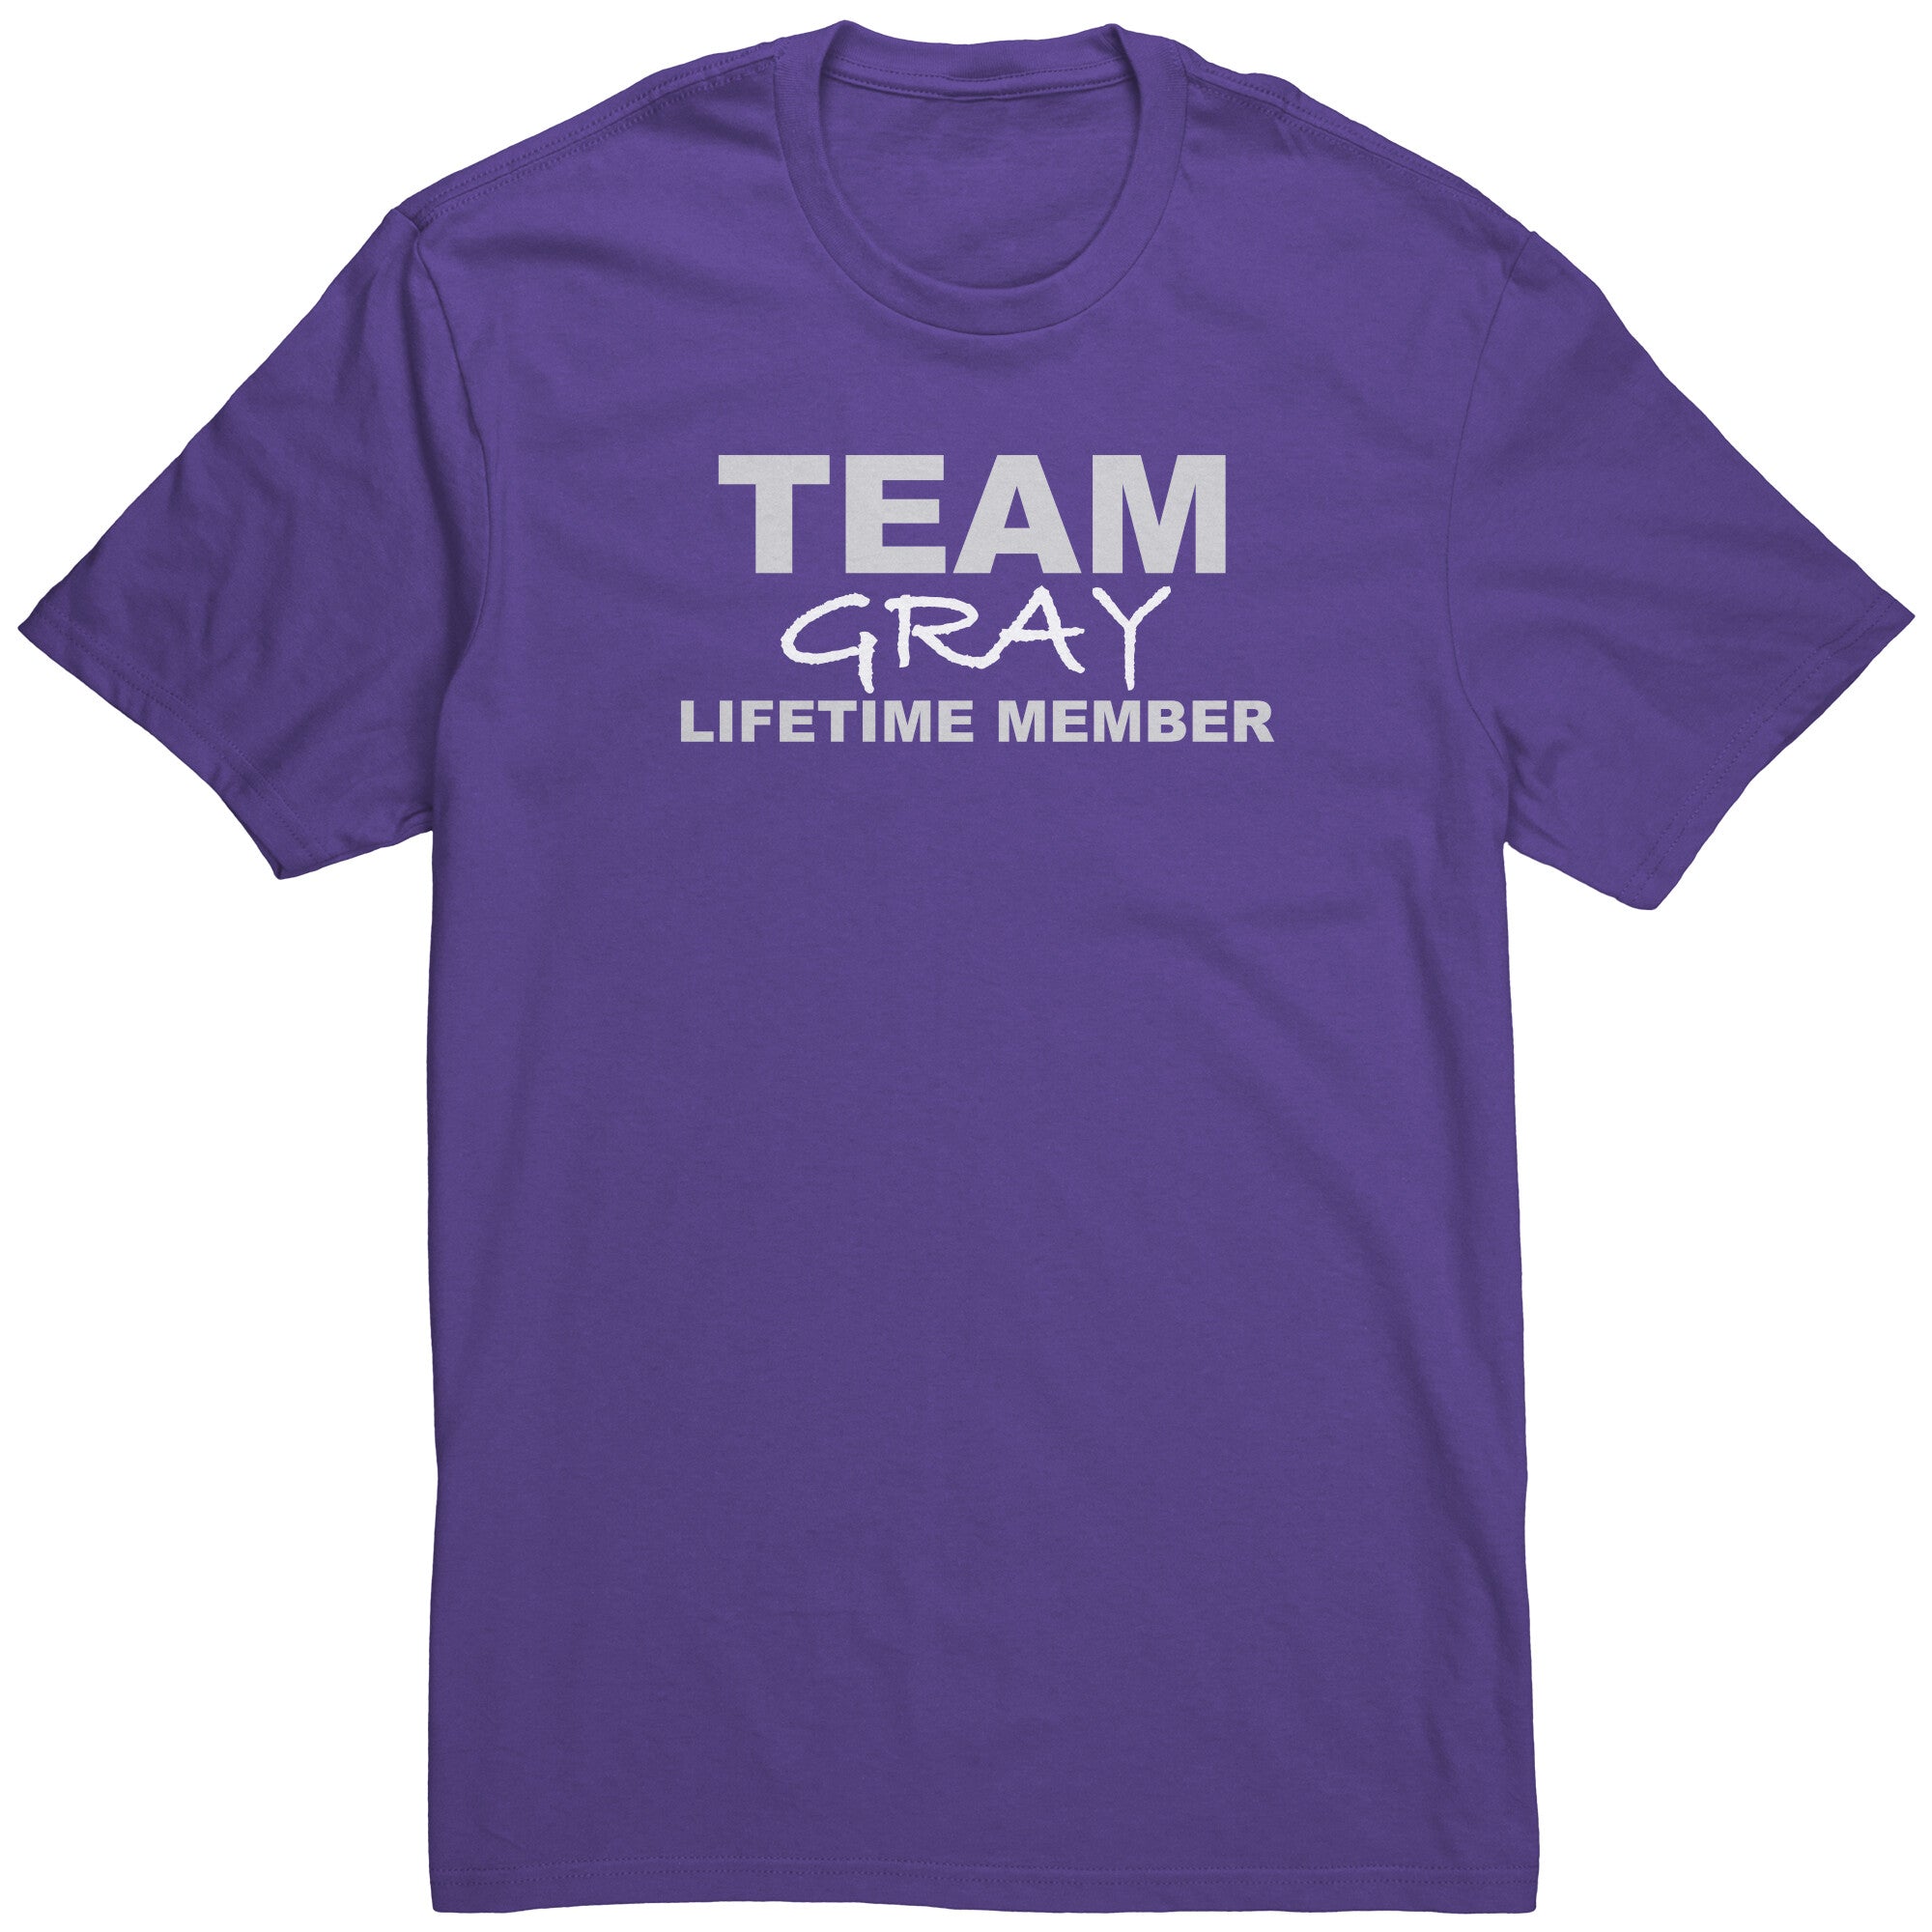 Team Gray - Lifetime Member (Shirt)